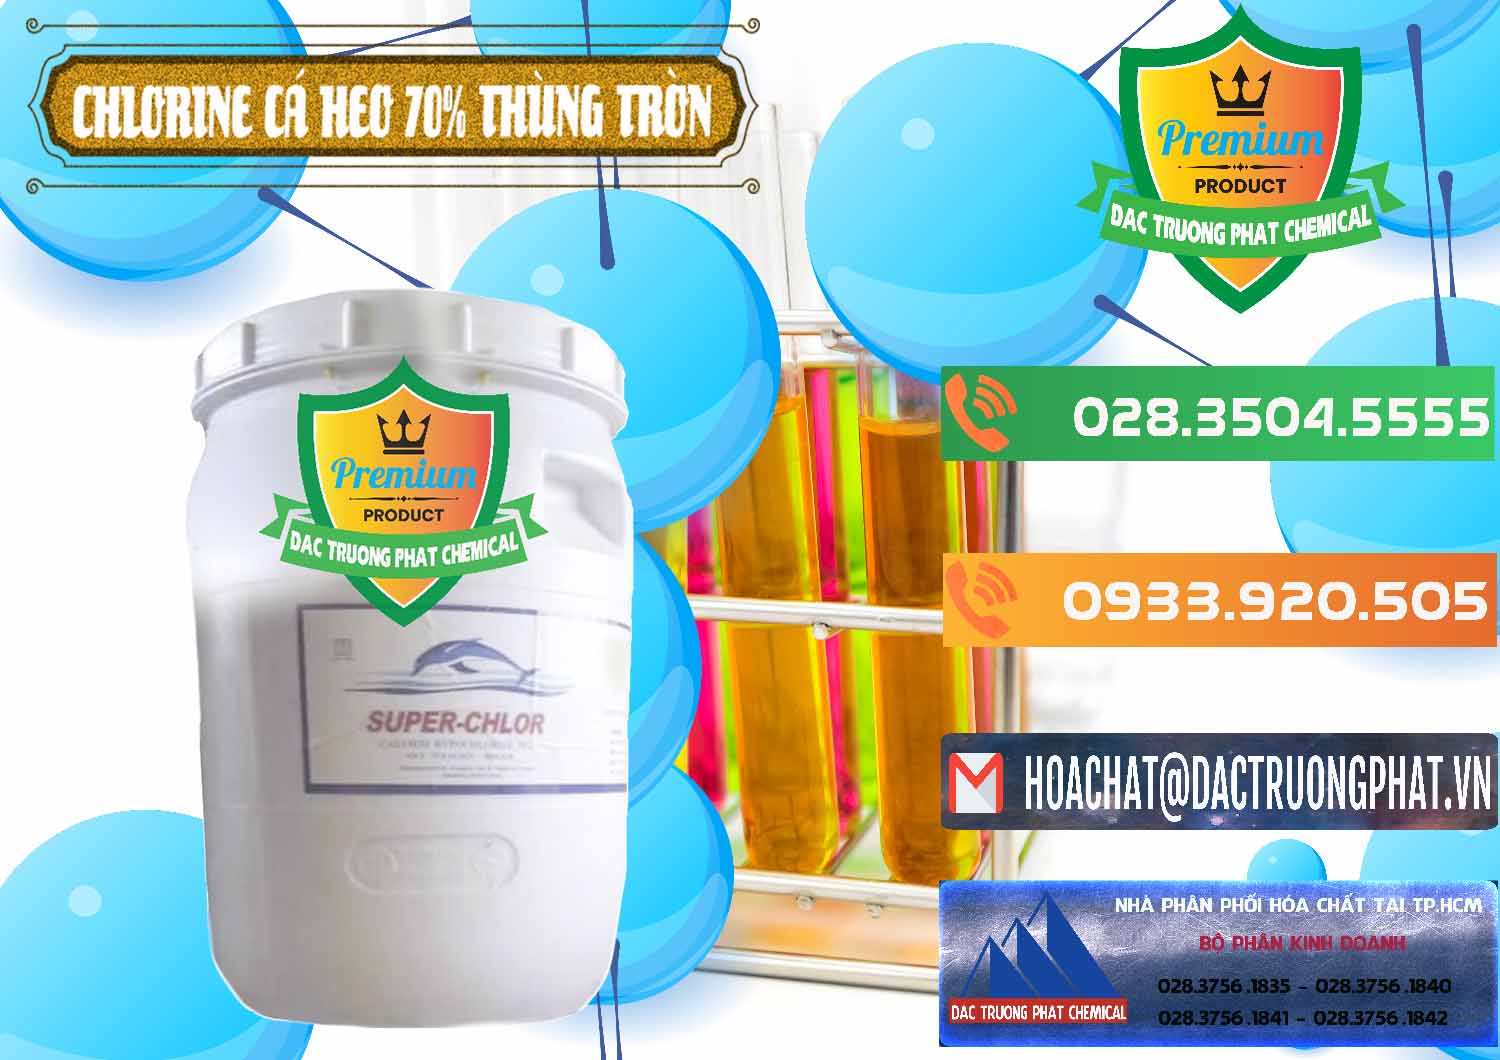 Công ty bán - cung cấp Clorin - Chlorine Cá Heo 70% Super Chlor Thùng Tròn Nắp Trắng Trung Quốc China - 0239 - Đơn vị chuyên bán _ phân phối hóa chất tại TP.HCM - hoachatxulynuoc.com.vn